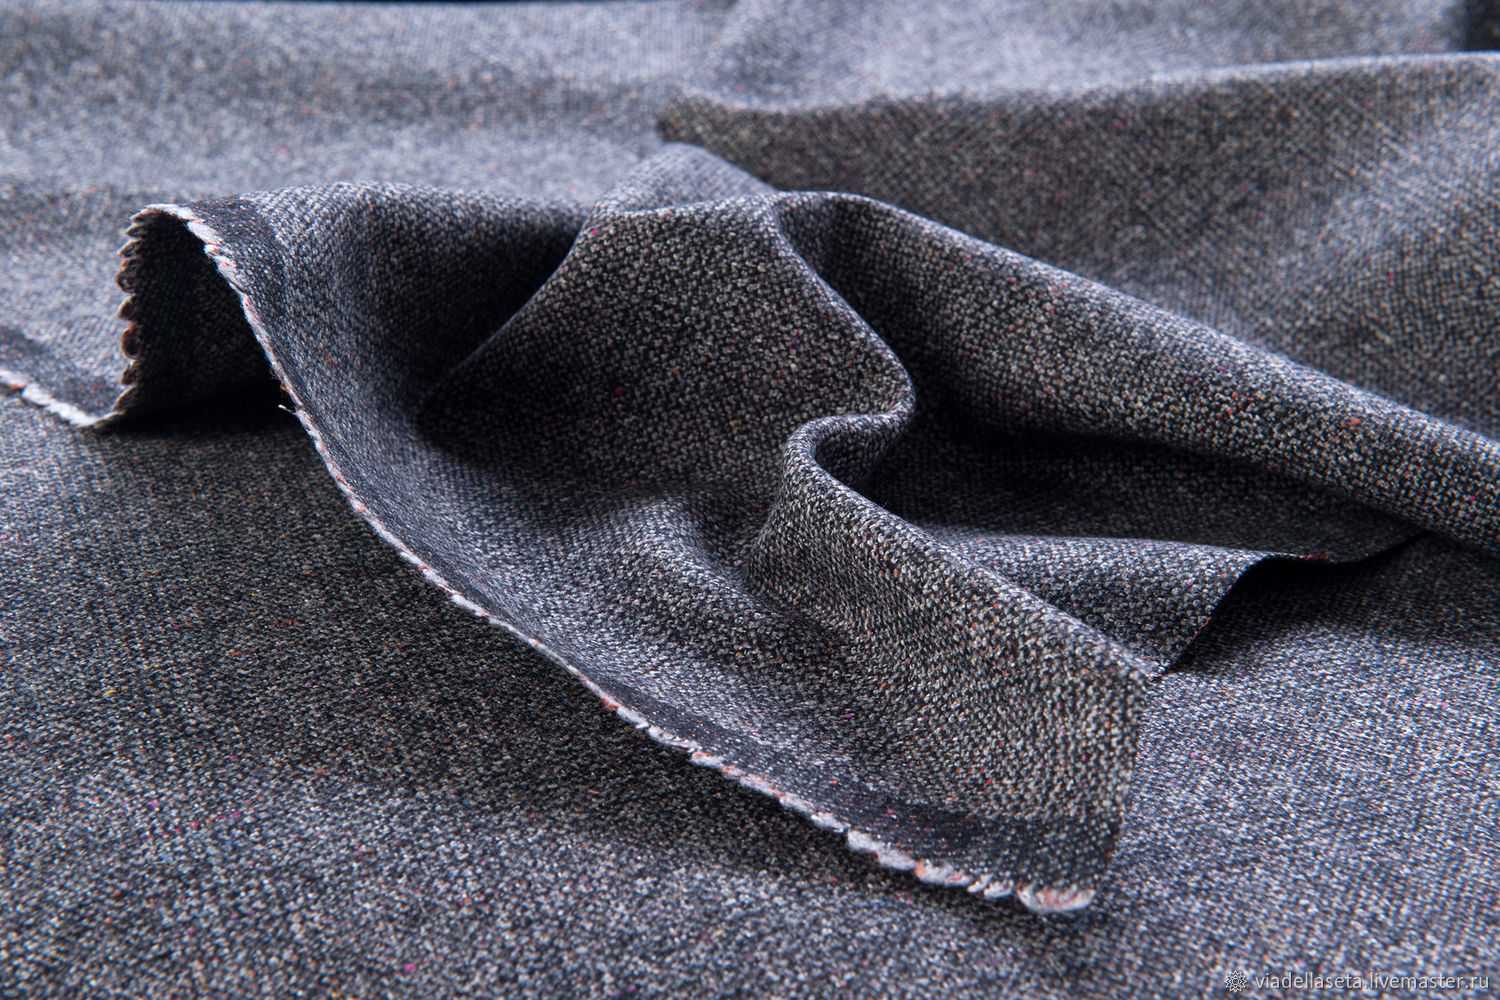 Существует большое количество материалов для галстуков Шёлковый галстук может стать отличным дополнением к любому костюму Твиловая ткань и шерстяной галстук прекрасно подойдут для зимнего периода Мужские однотонные галстуки из шерсти и фетра считаются кла